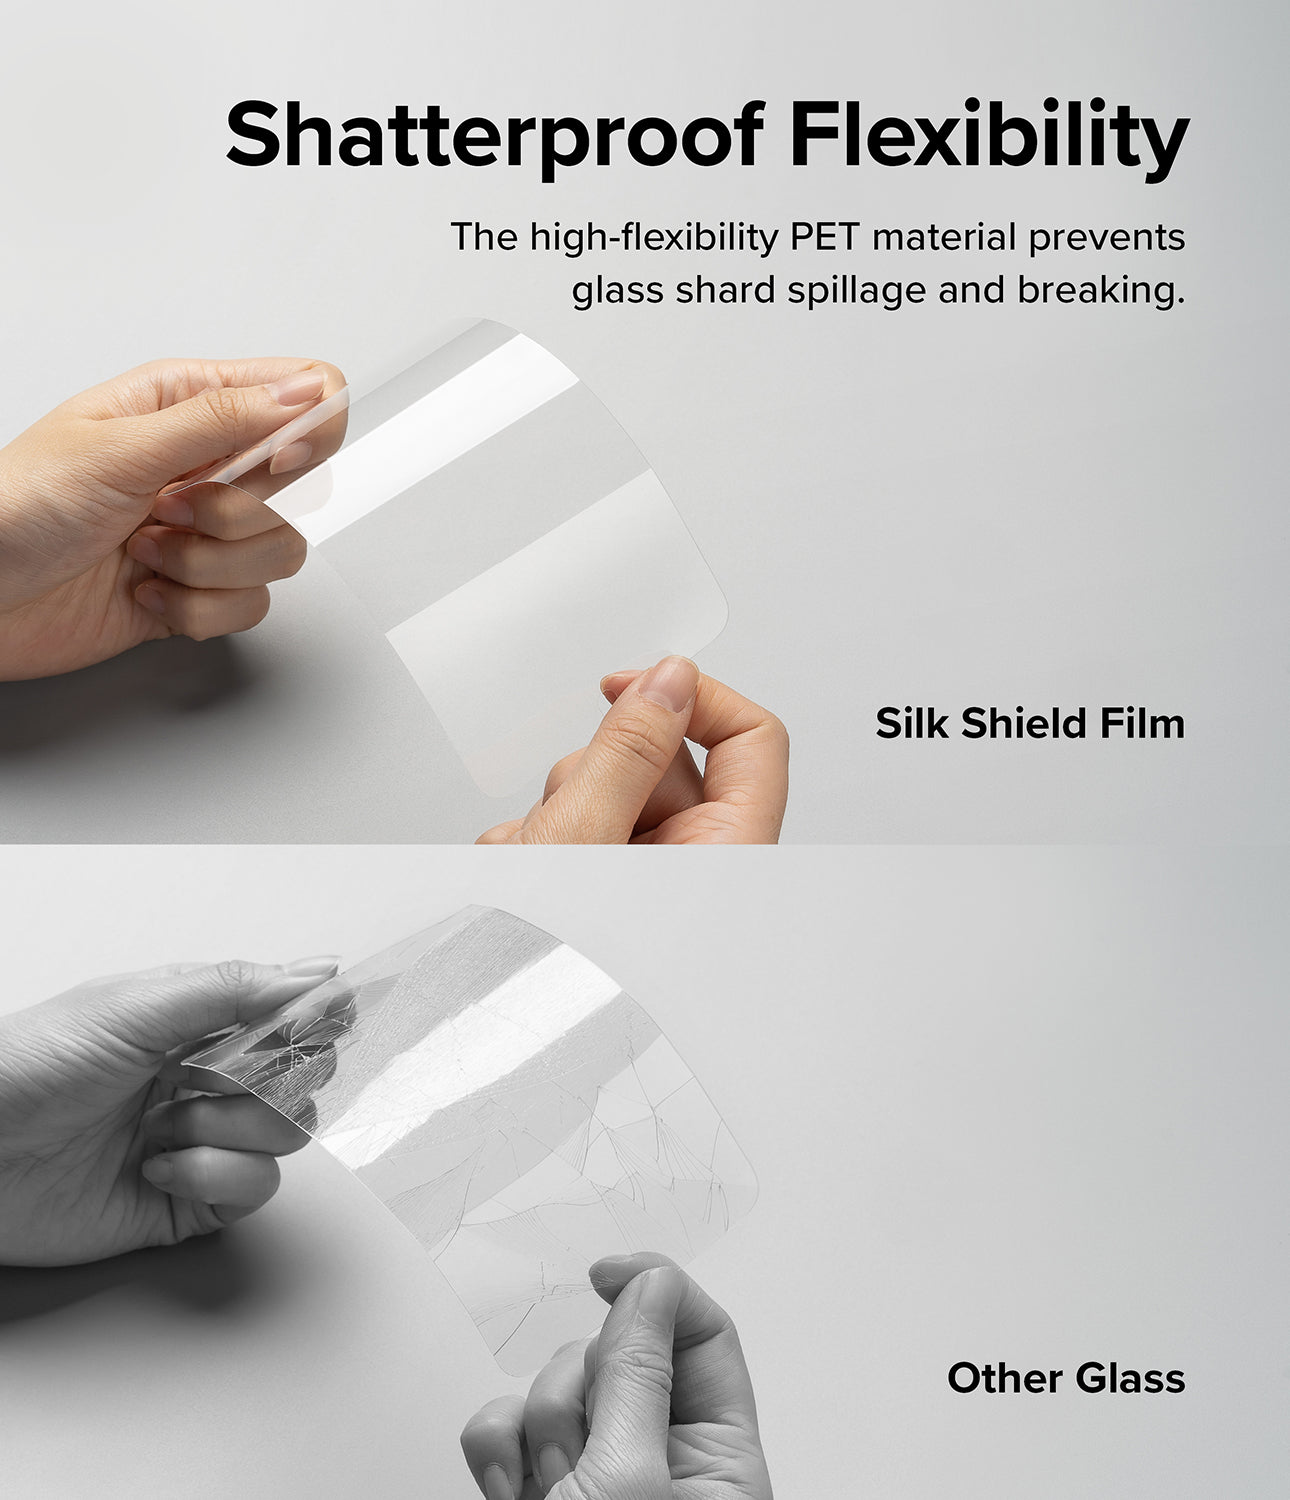 Shatterproof Flexibility